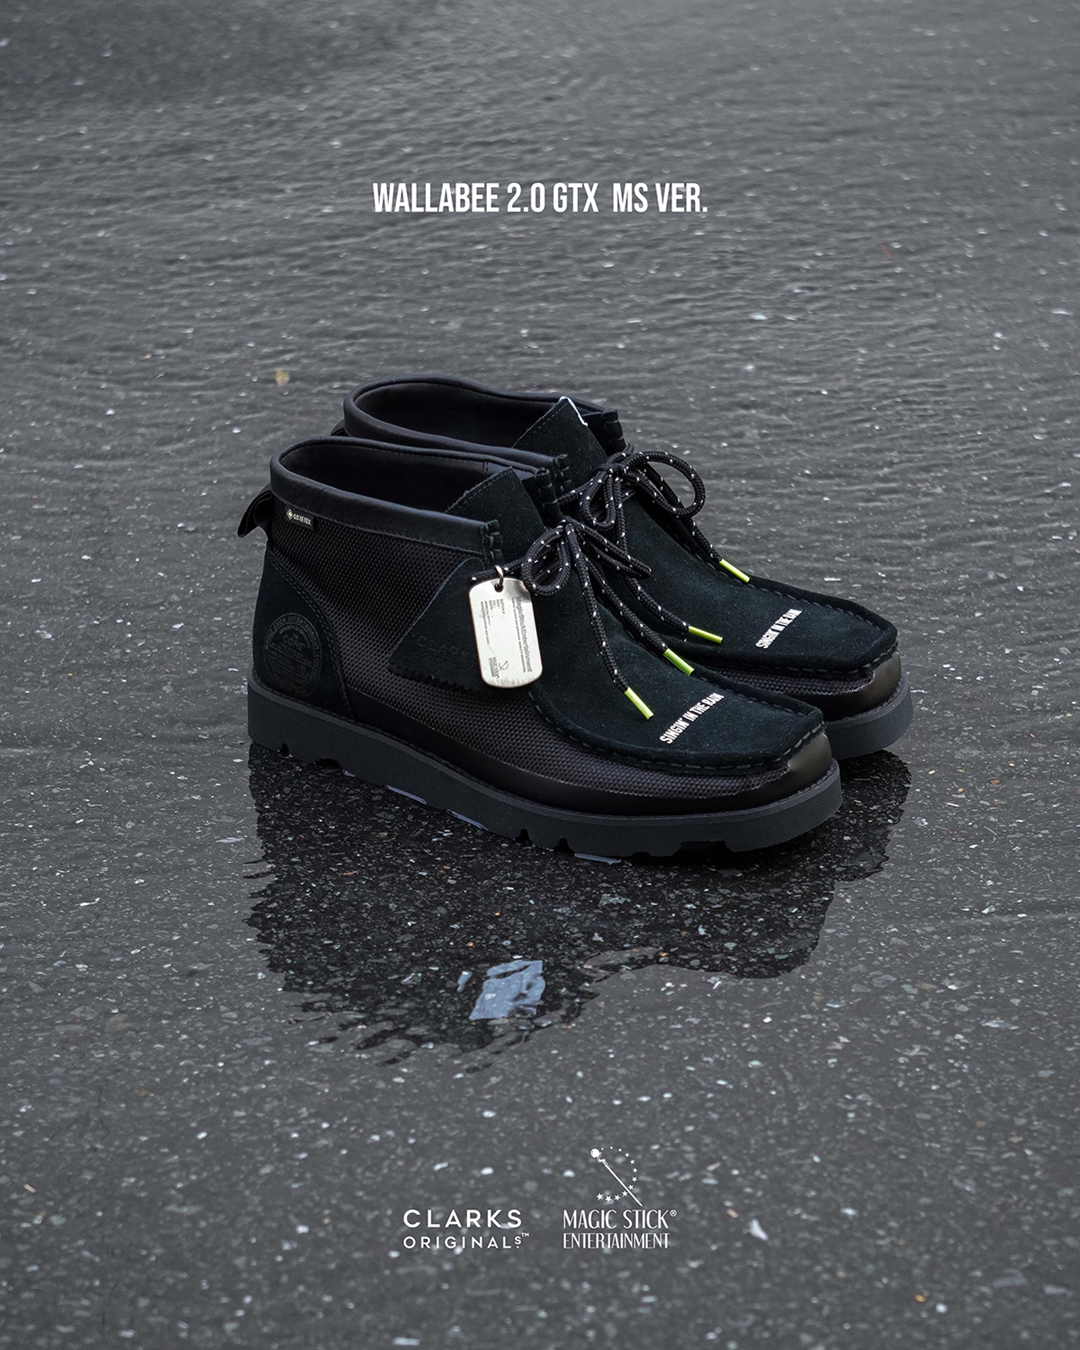 MAGIC STICK × Clarks ORIGINALSのカスタムシューズ第2弾「Wallabee Boots 2.0 GTX」がゲリラリリース (マジックスティック クラークス)